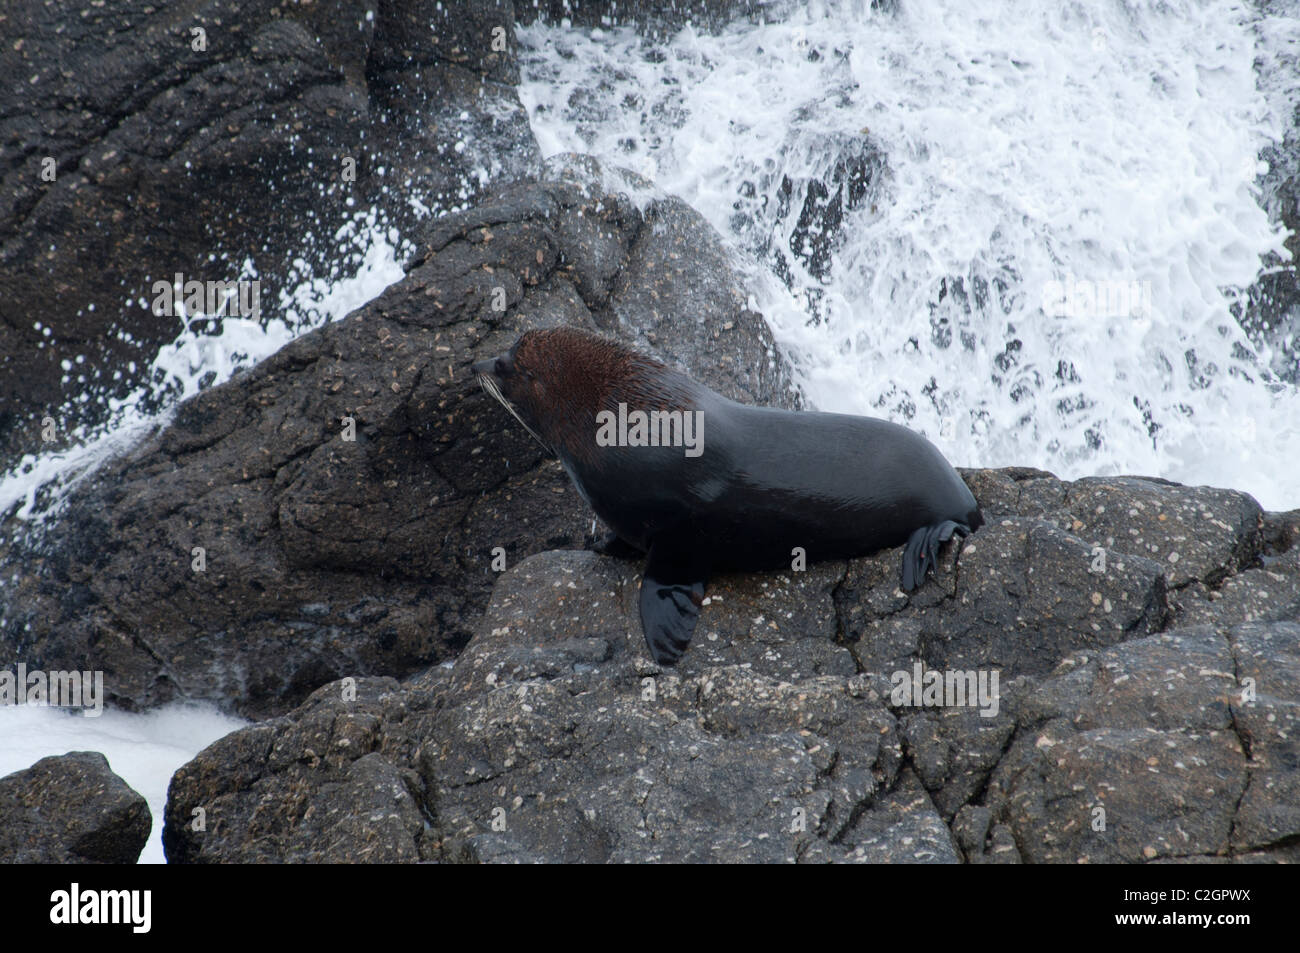 New Zealand Fur Seals rest always on rocky coastline.  Neuseeländische Seebären ruhen immer an Felsküsten. Stock Photo